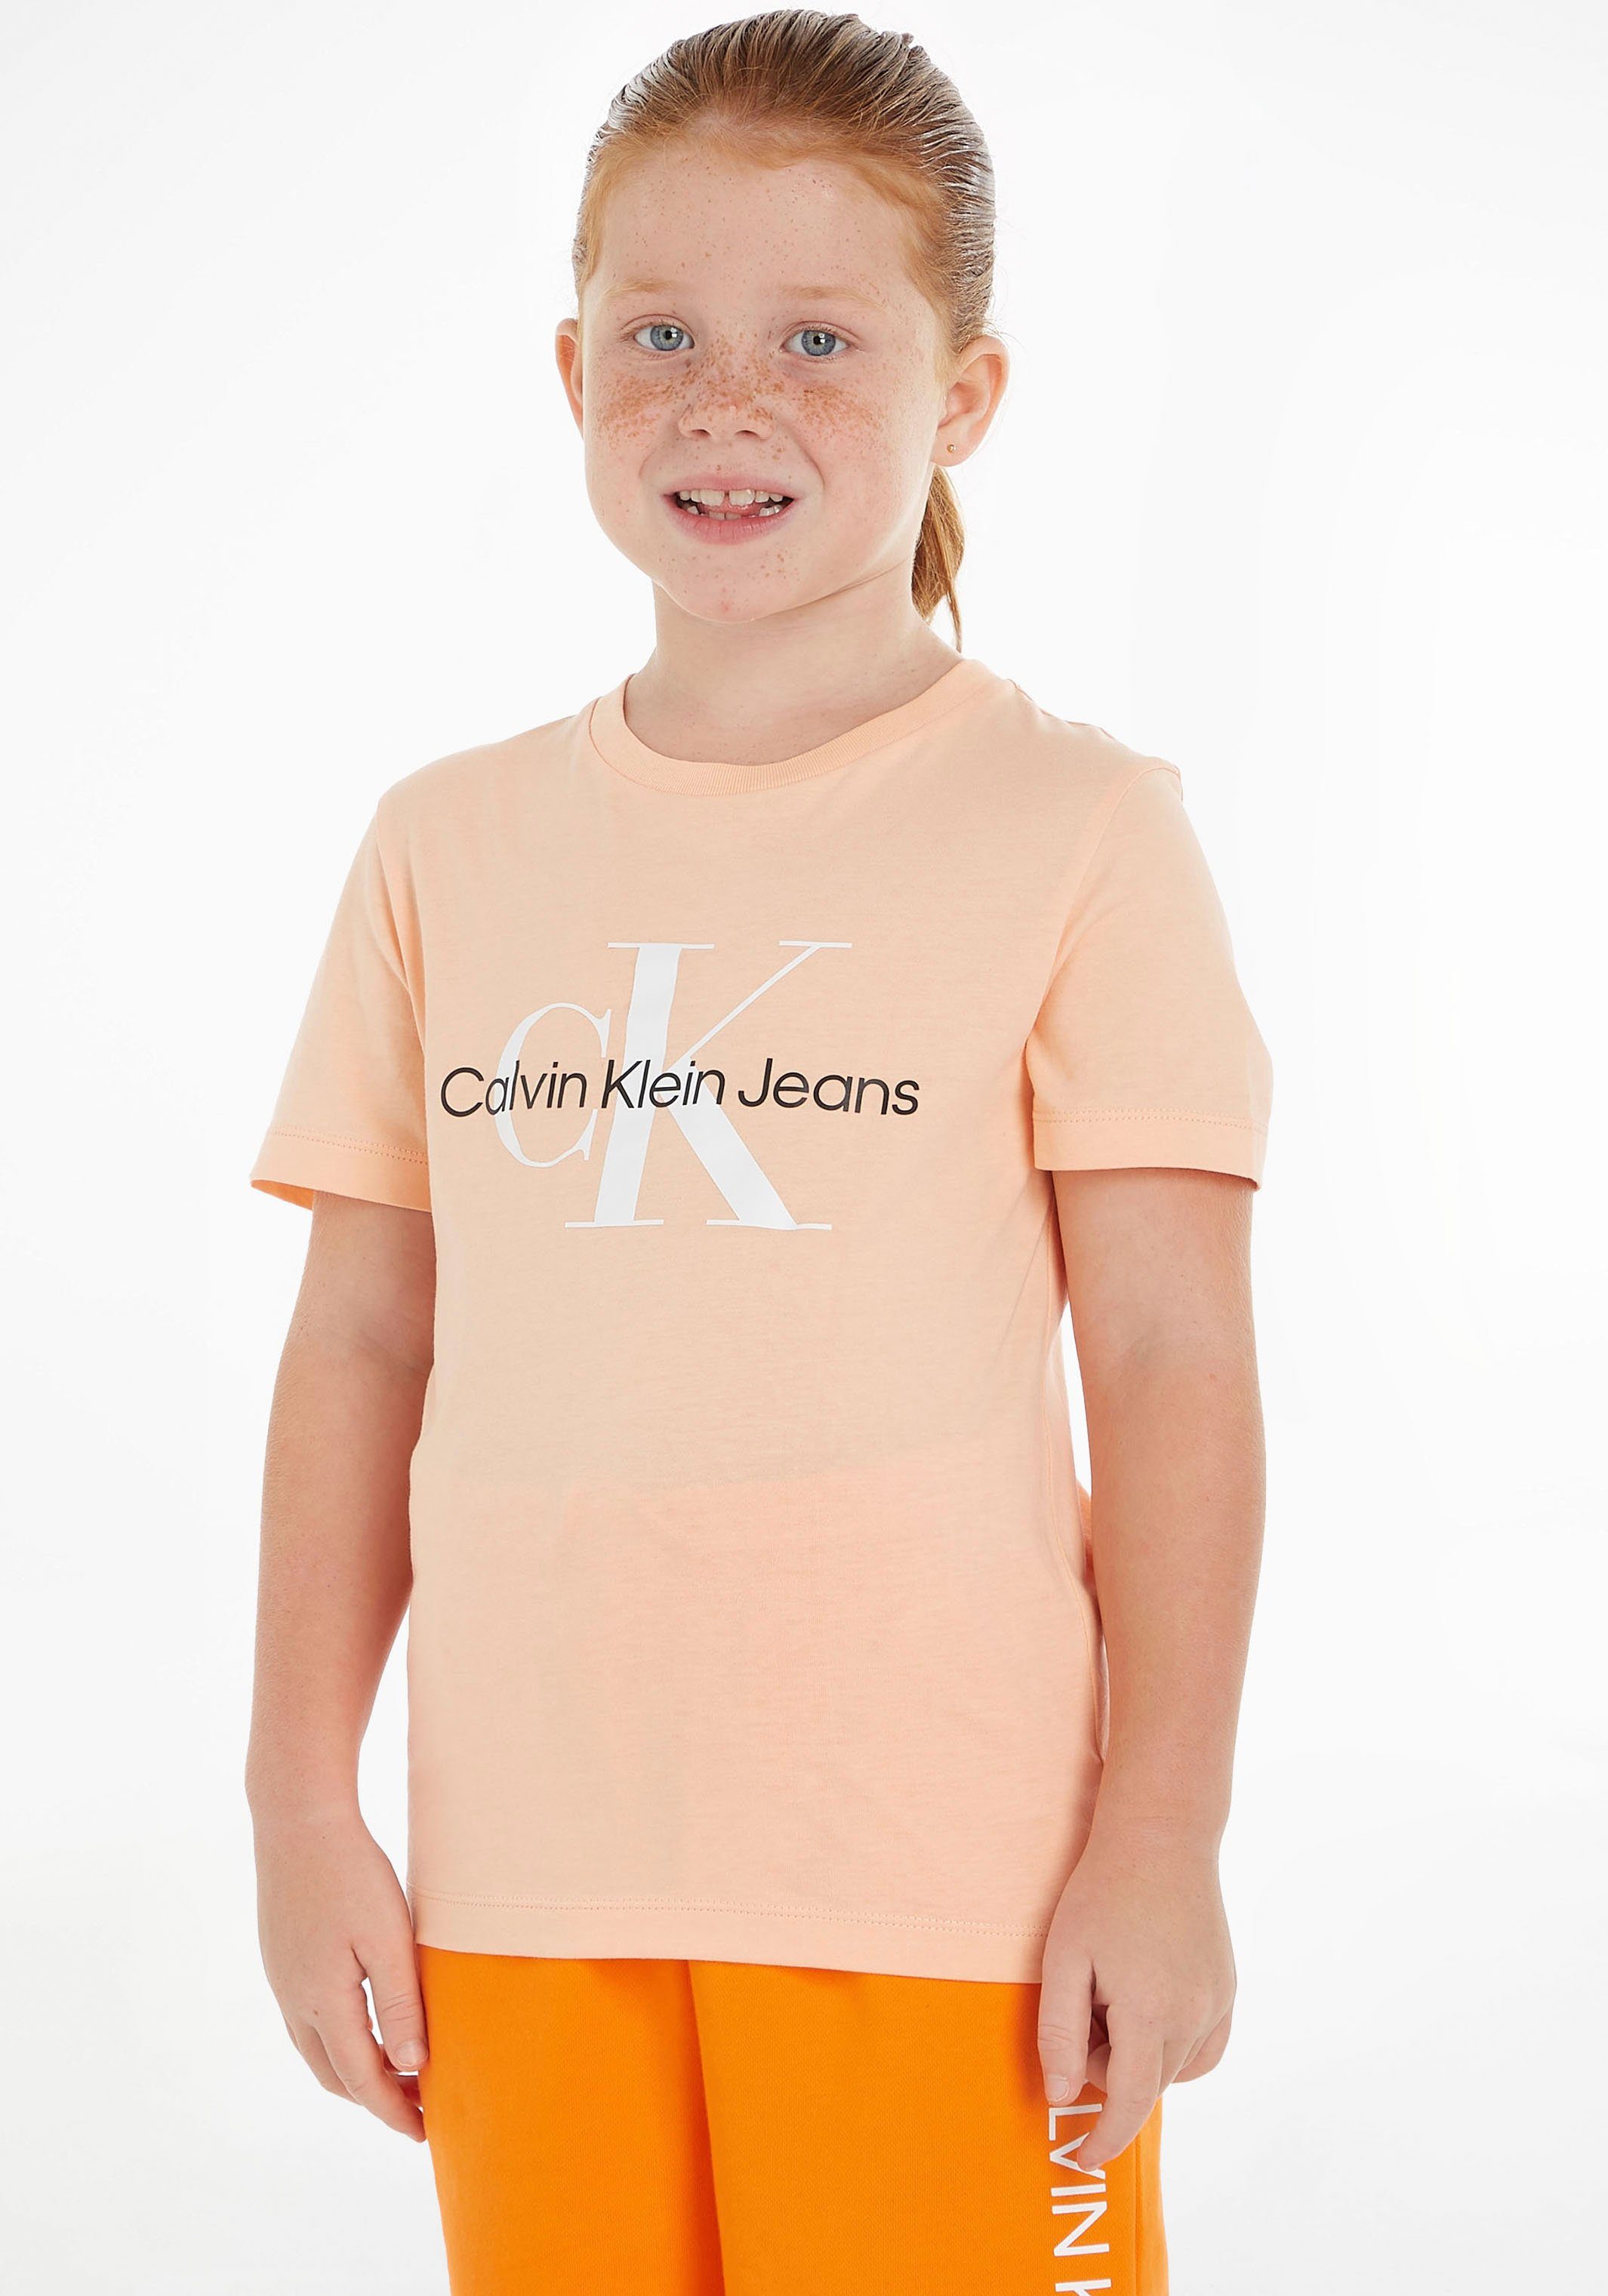 Calvin Klein Jeans T-Shirt MONOGRAM LOGO T-SHIRT Kinder Kids Junior MiniMe,für Mädchen und Jungen hellorange | T-Shirts